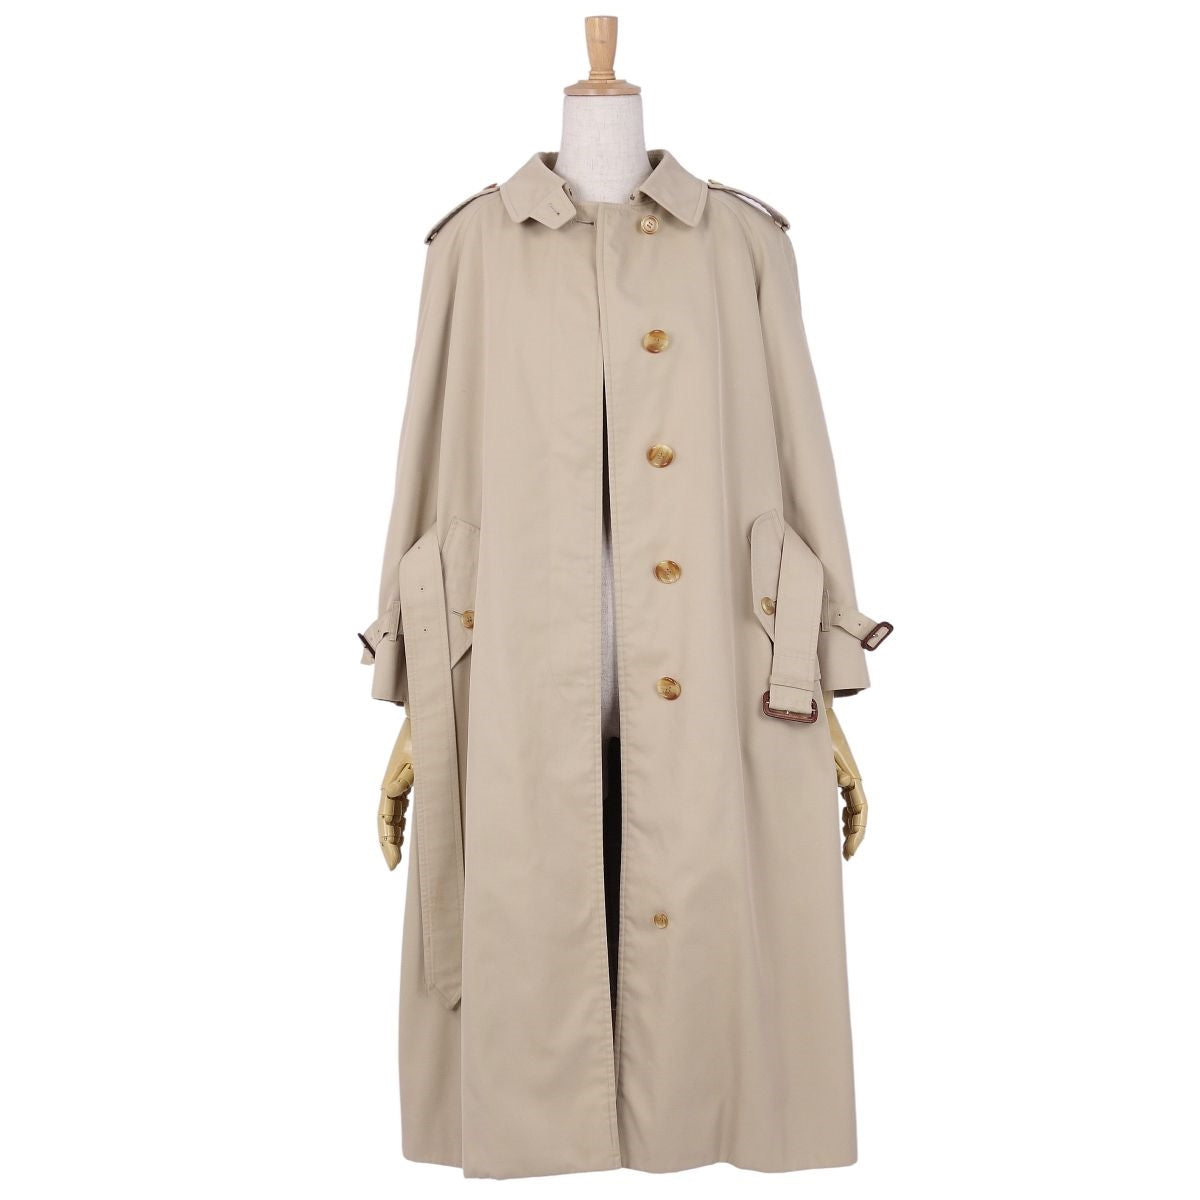 Vint Burberry s Coat Single Trent Coat r Coat  Liner   Dress 9AB2 (M equivalent) Beige Vintage Vintage Contemporary Fashion